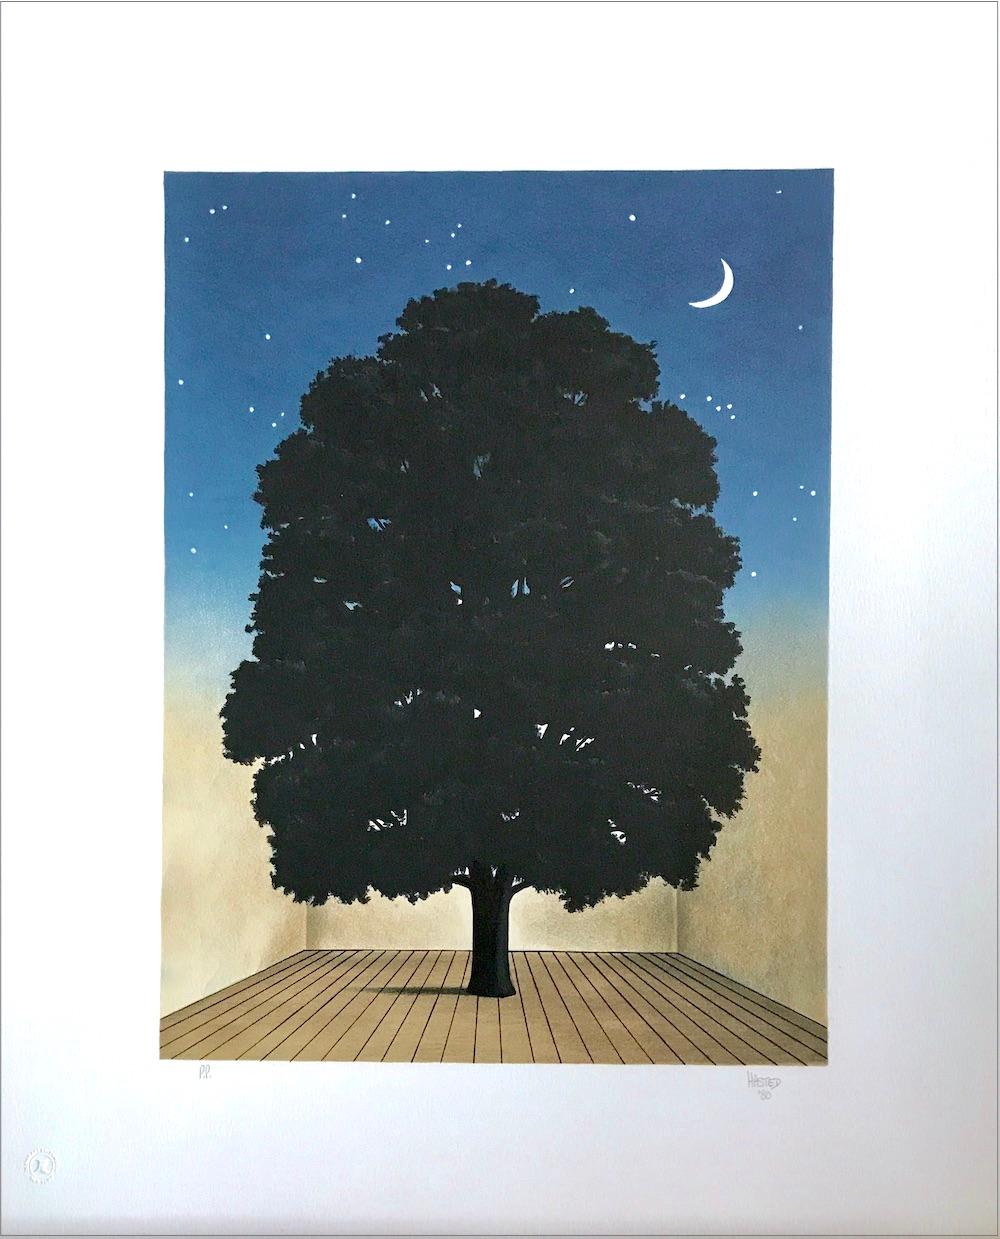 SONG OF PRAISE, lithographie dessinée à la main, portrait d'arbre, ciel de nuit, croissant de lune - Print de Michael Hasted